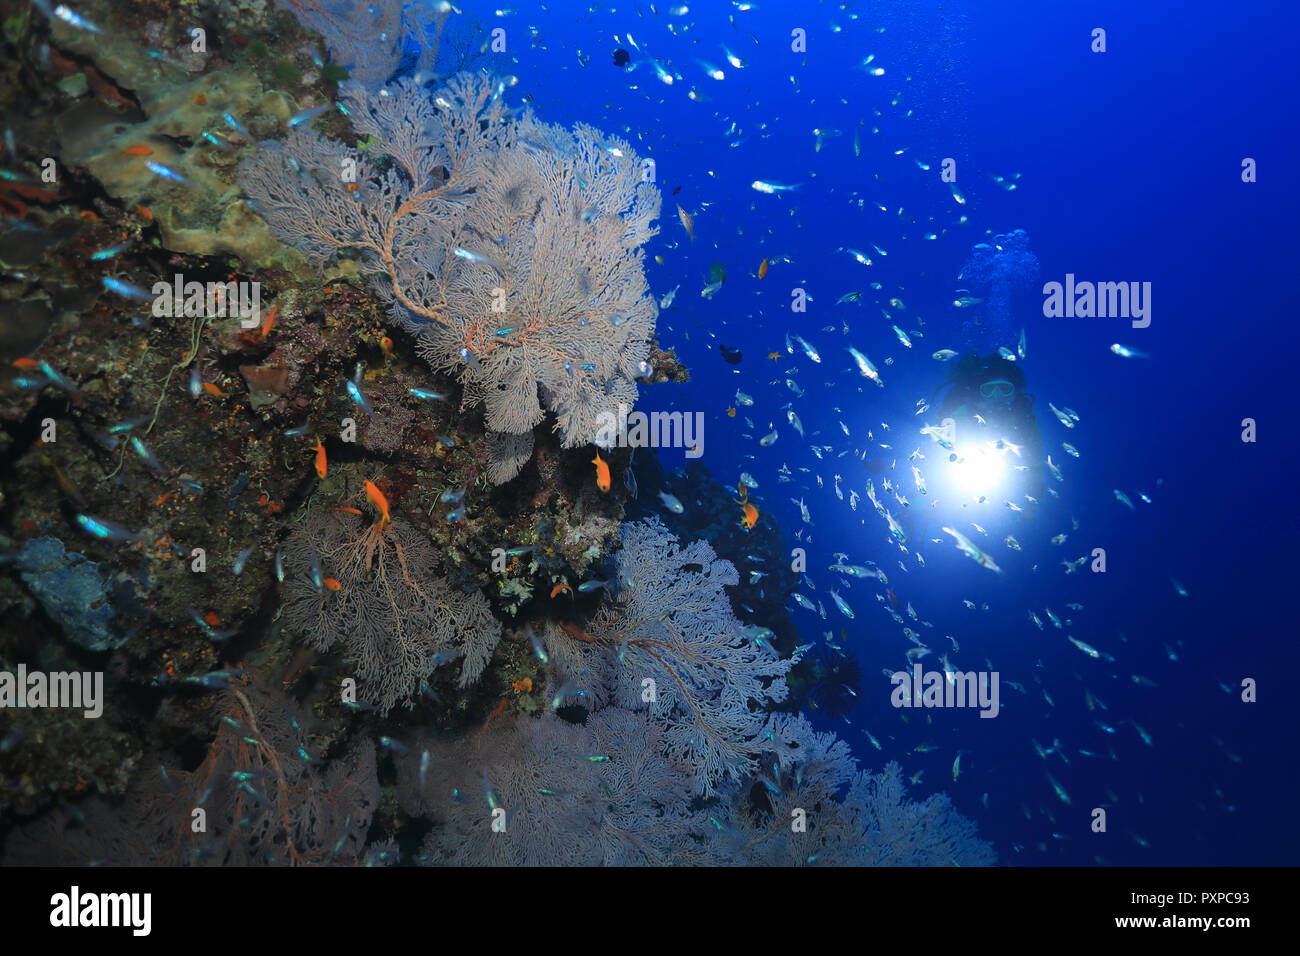 De beaux coraux et petits poissons sous l'eau dans la Grande Barrière de Corail de l'Australie Banque D'Images